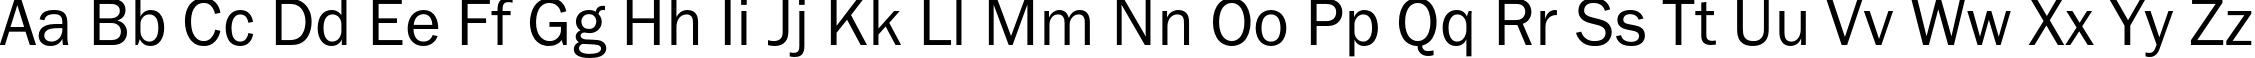 Пример написания английского алфавита шрифтом FranklinGothicBookC